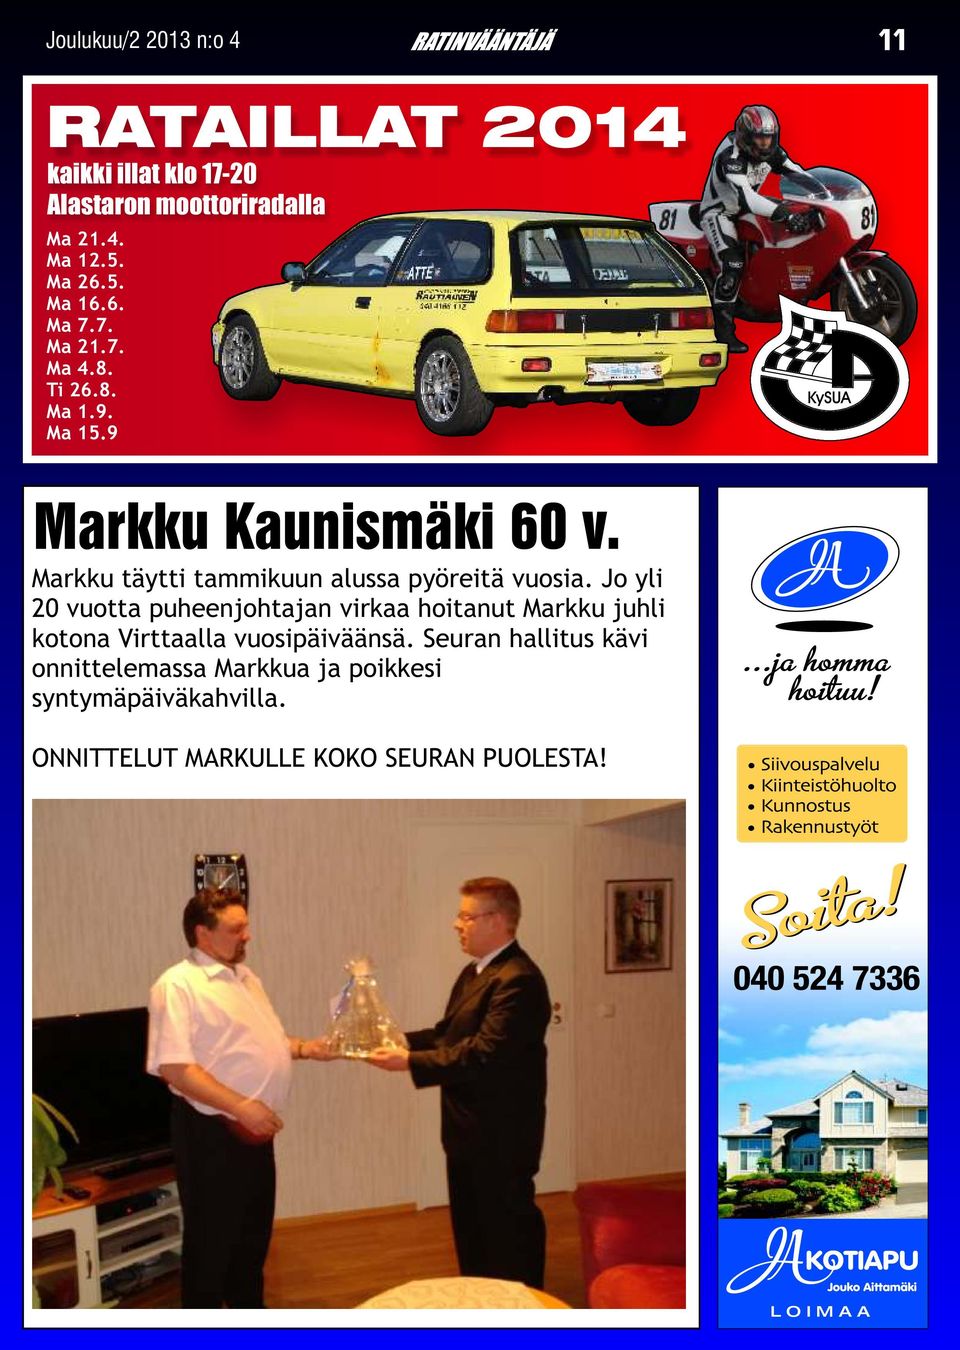 Jo yli 20 vuotta puheenjohtajan virkaa hoitanut Markku juhli kotona Virttaalla vuosipäiväänsä.